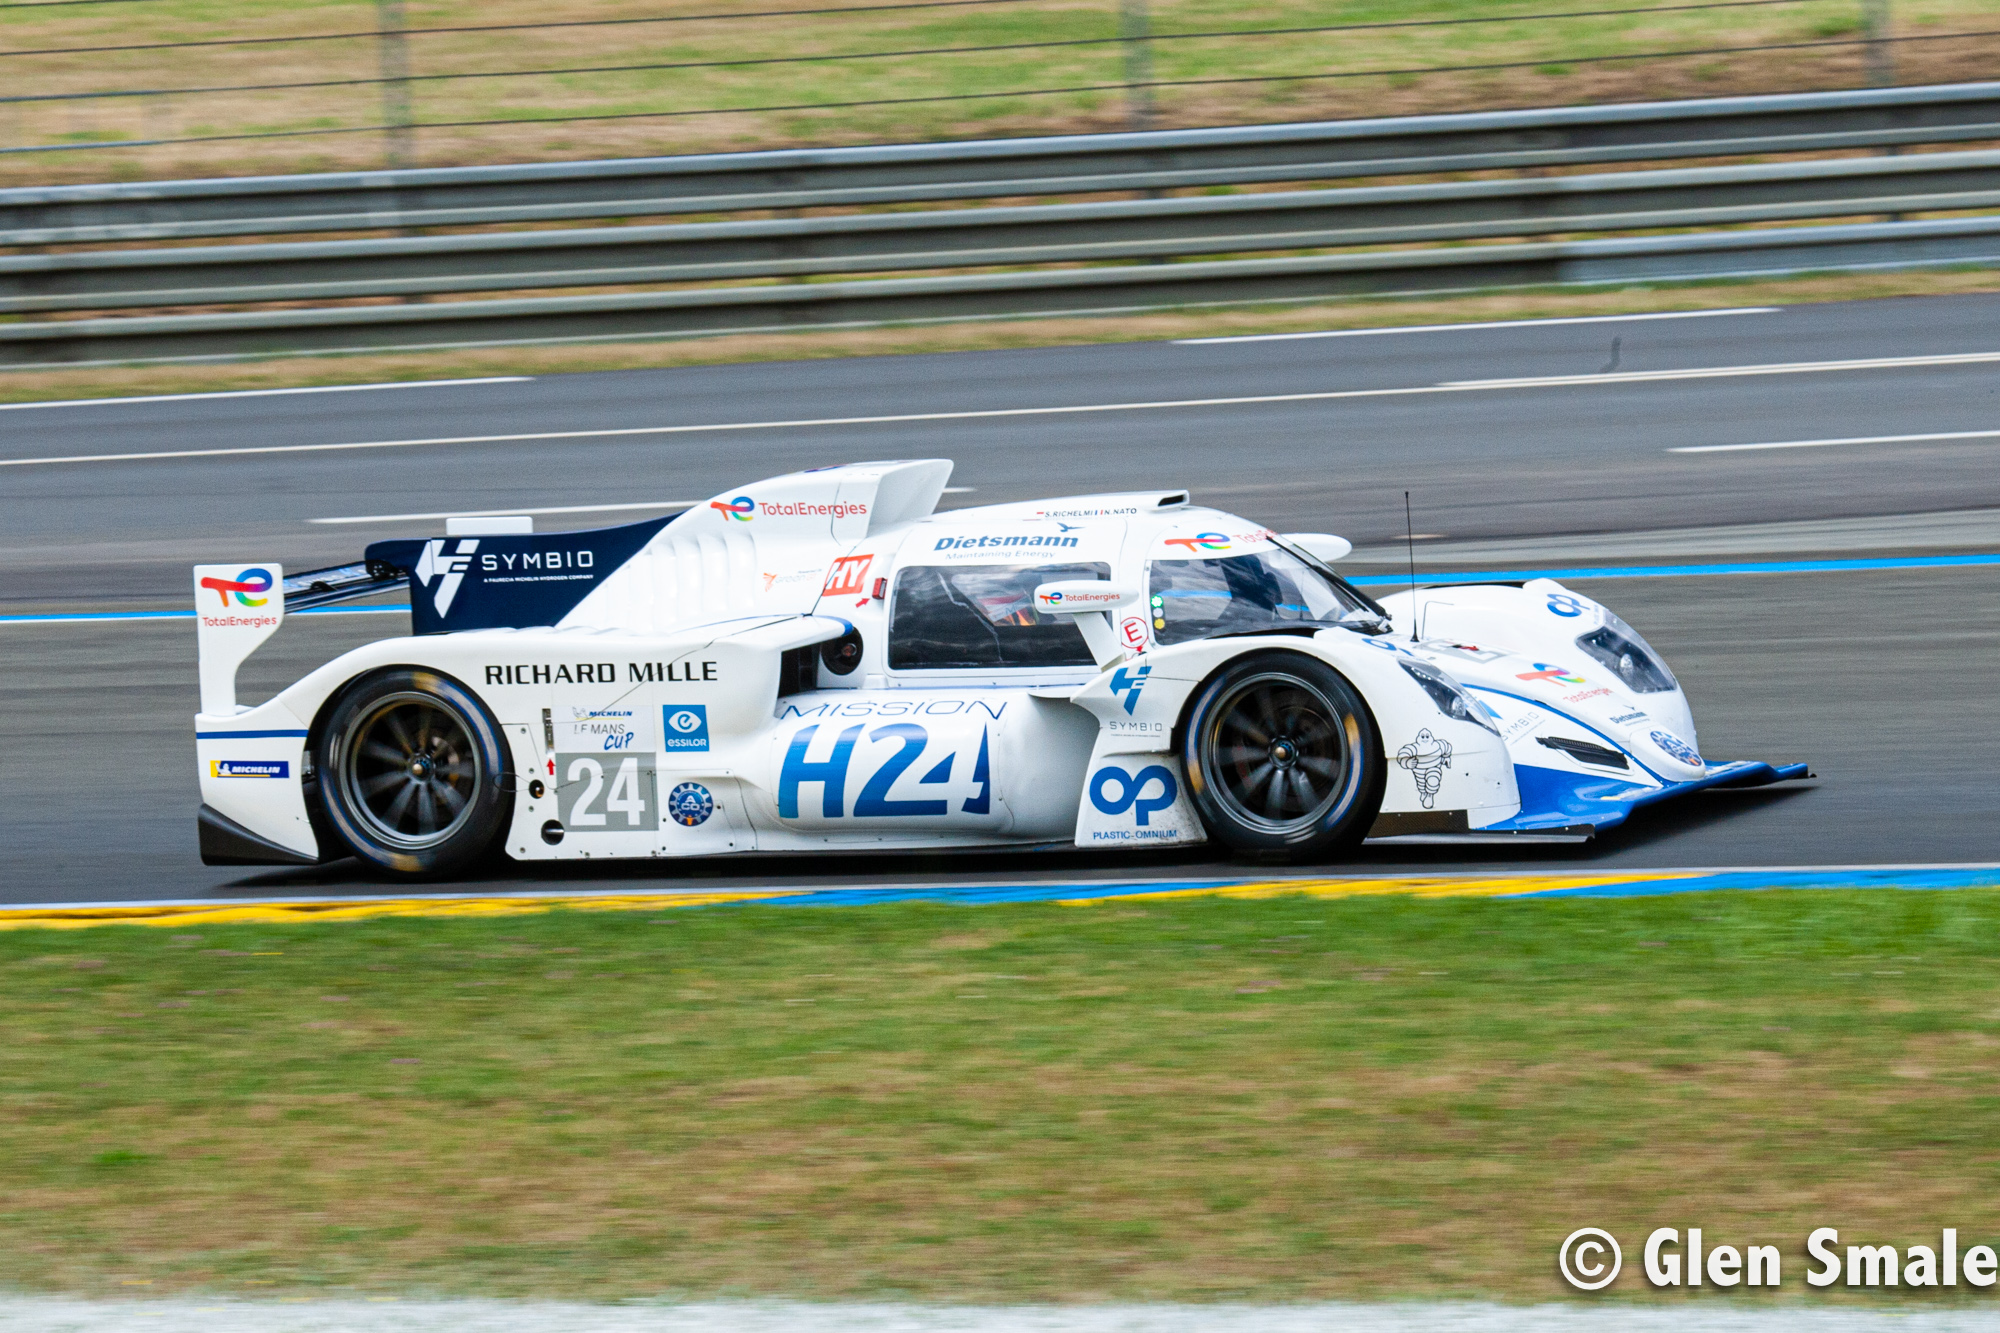 No. 24 H24 Racing Hydrogen car